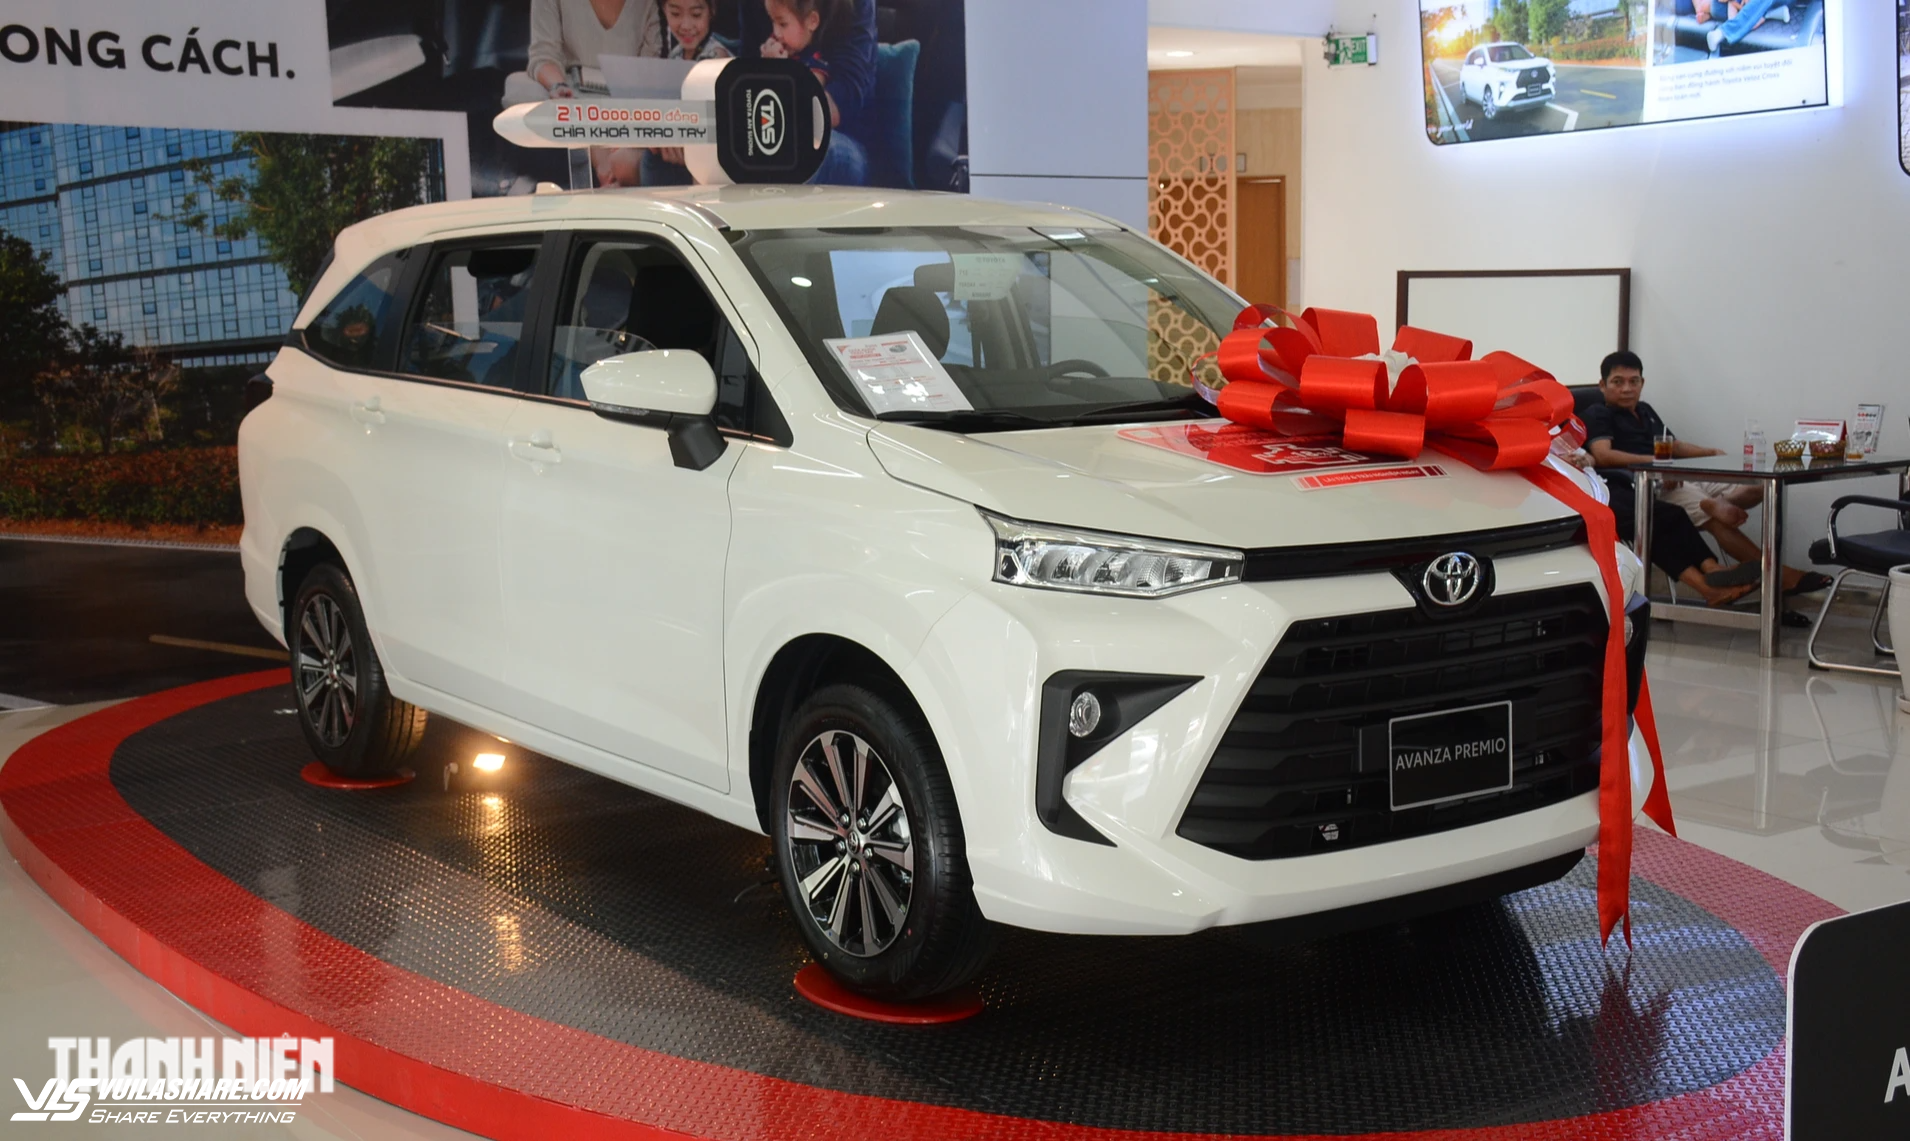 Khung gầm thiếu mối hàn, Toyota Việt Nam triệu hồi Veloz và Avanza- Ảnh 1.